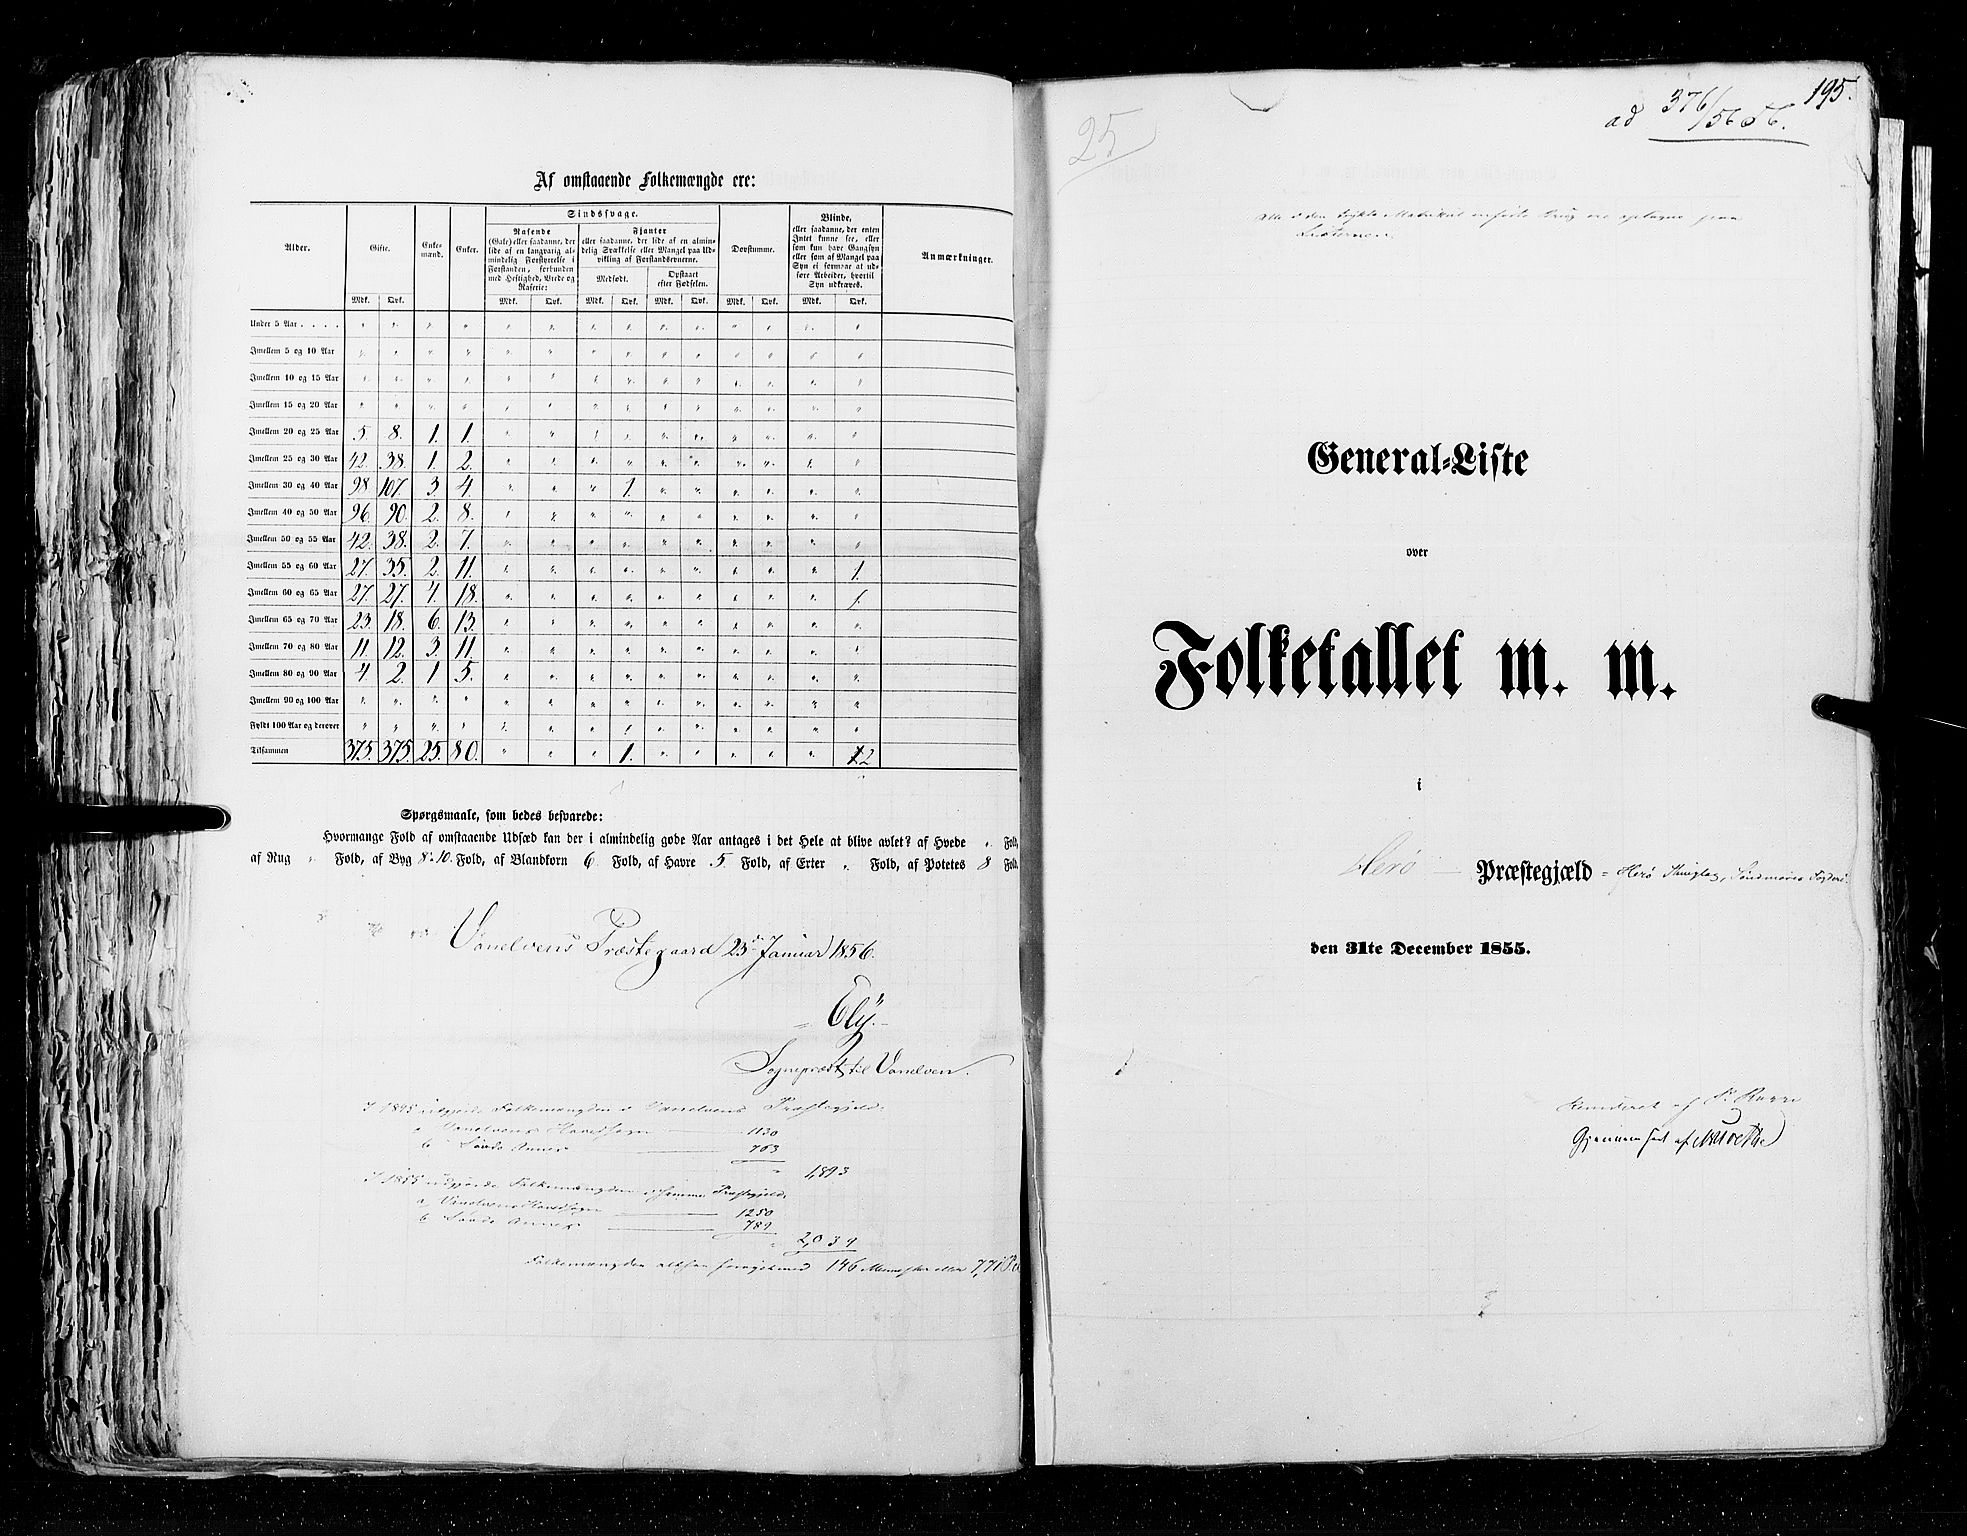 RA, Census 1855, vol. 5: Nordre Bergenhus amt, Romsdal amt og Søndre Trondhjem amt, 1855, p. 195